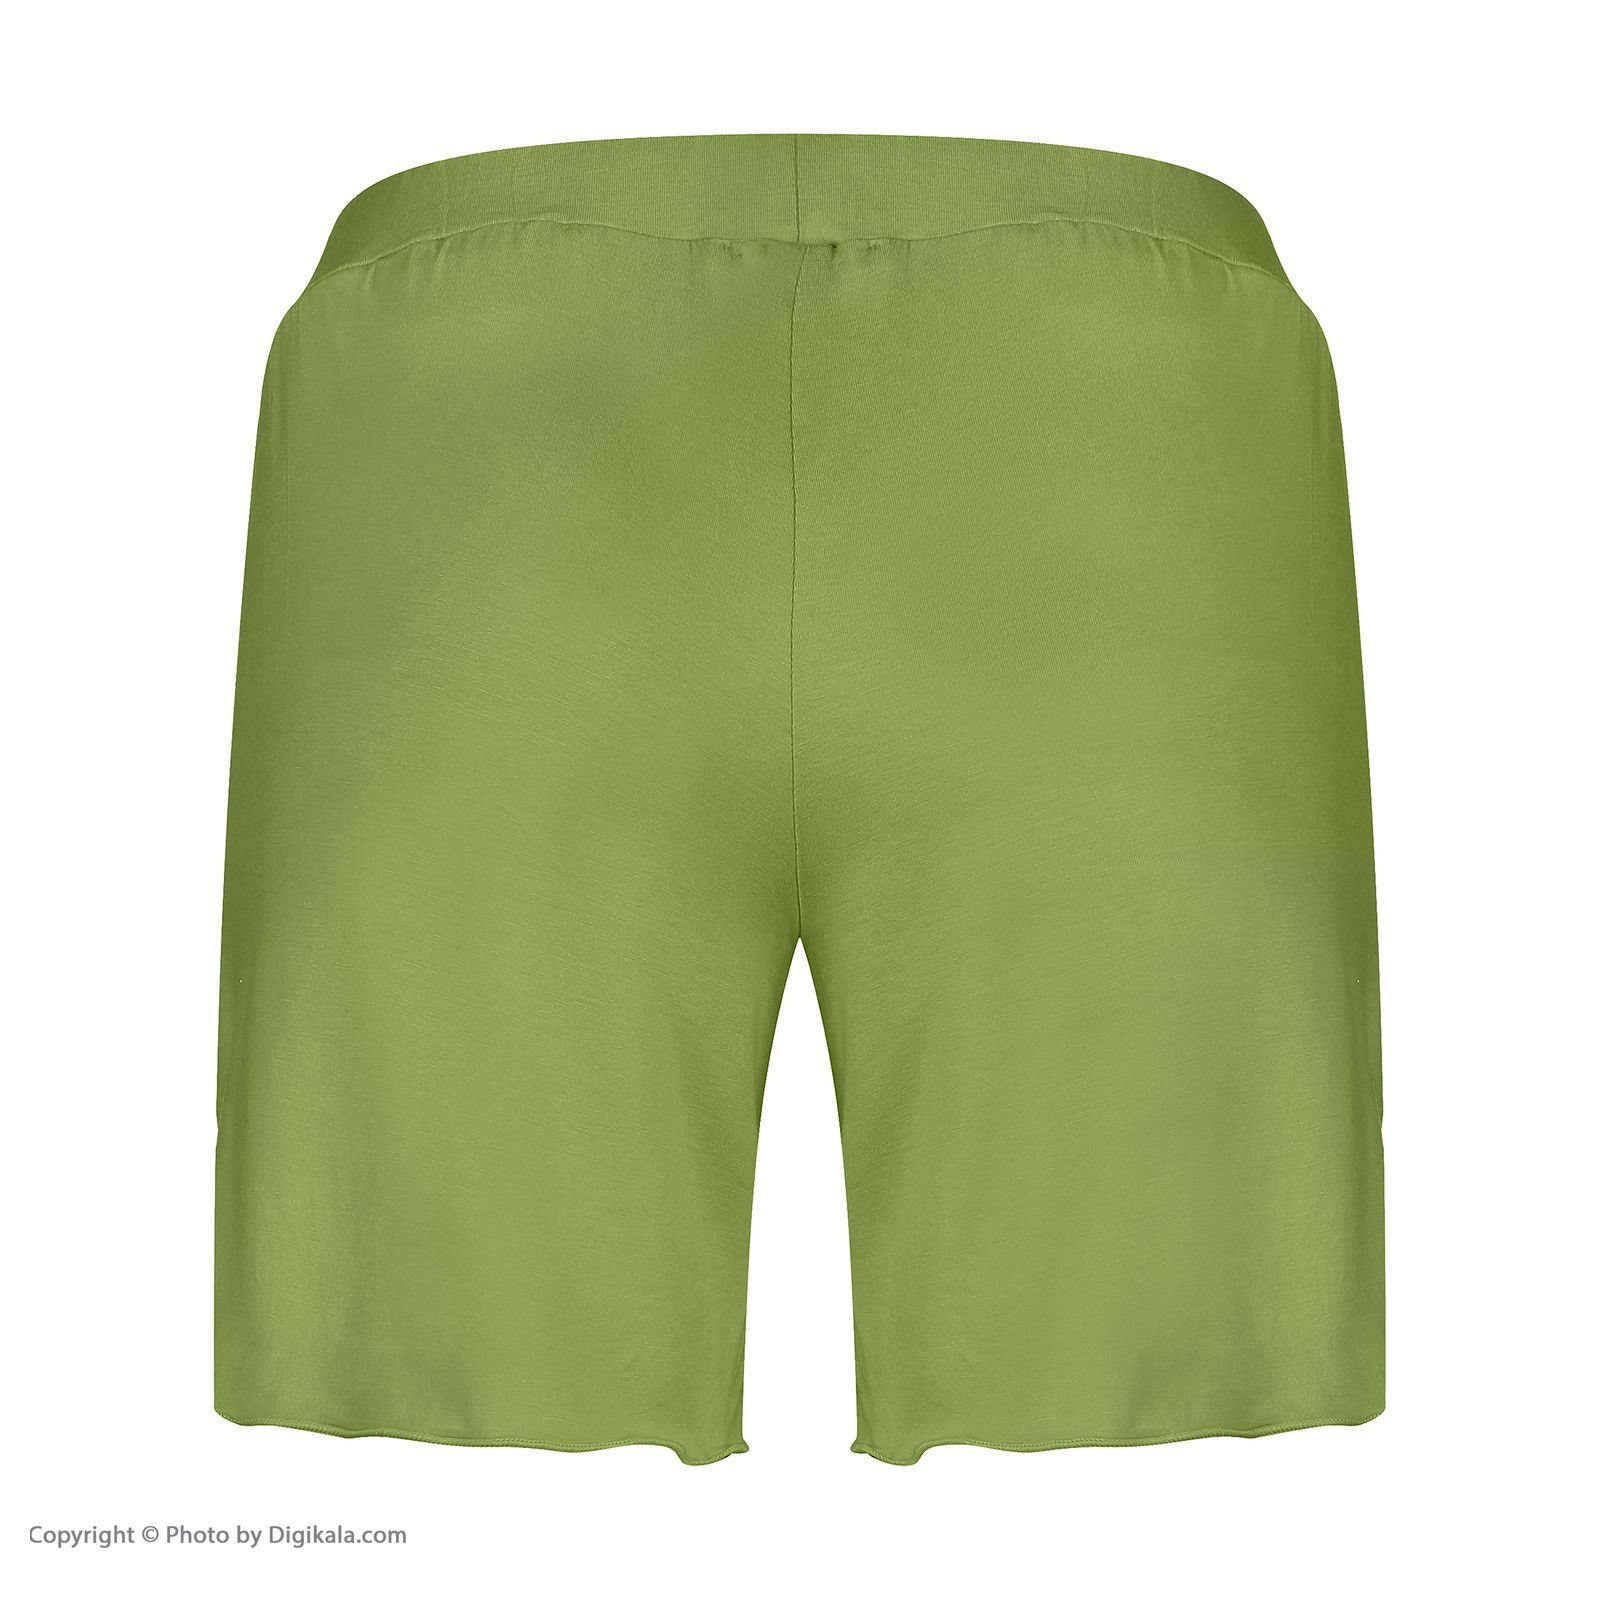 ست تیشرت و شلوارک زنانه افراتین مدل آرام رنگ سبز -  - 10